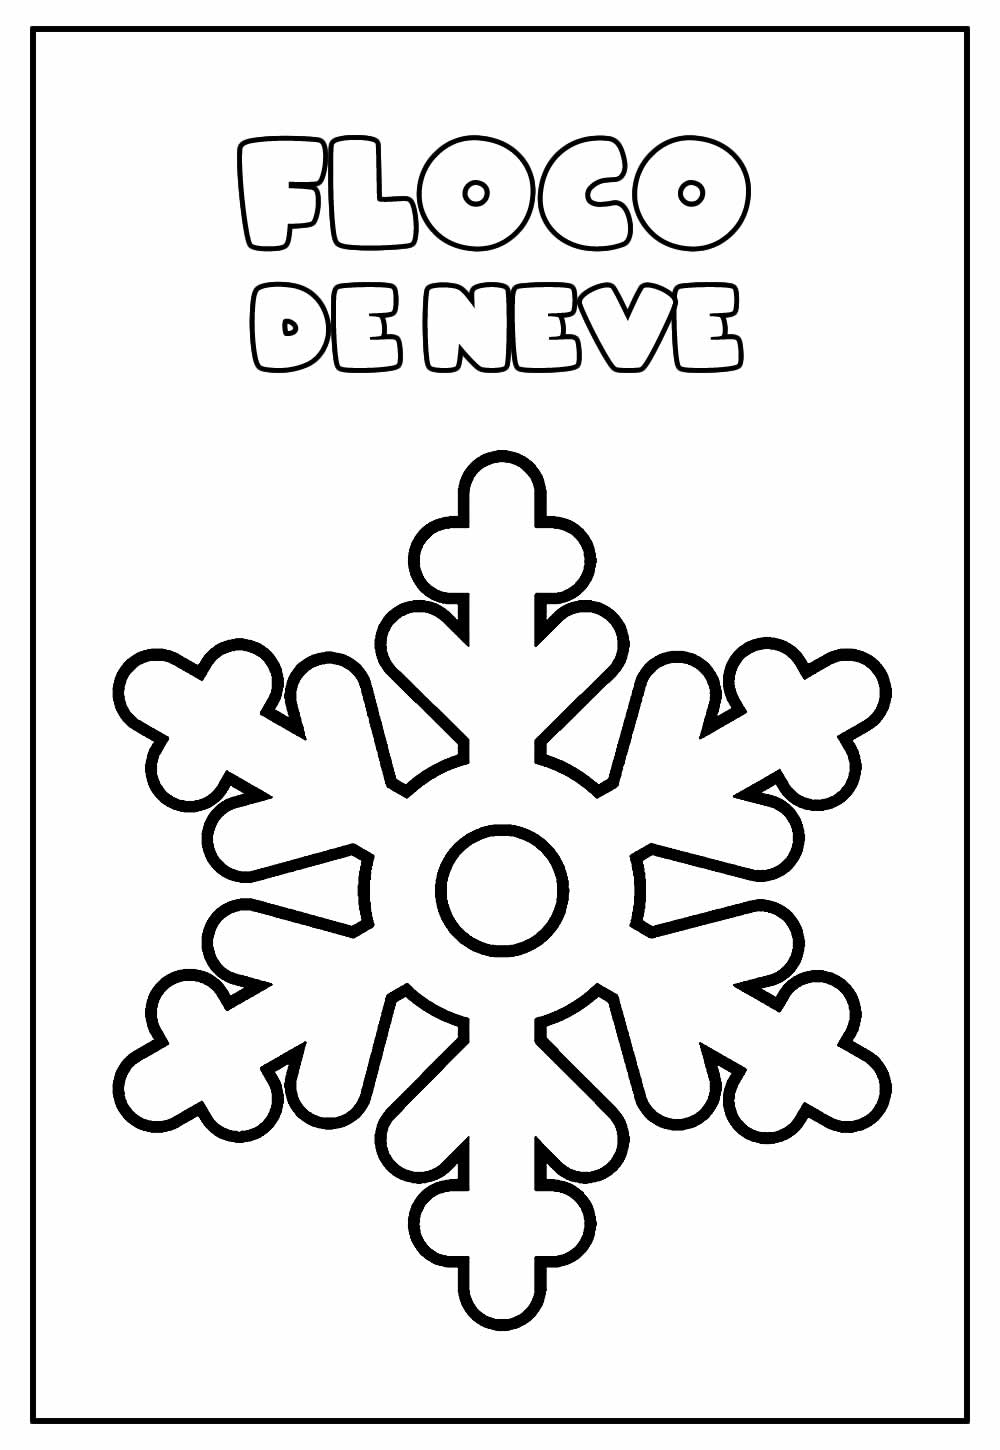 Desenho Educativo de Floco de Neve para colorir